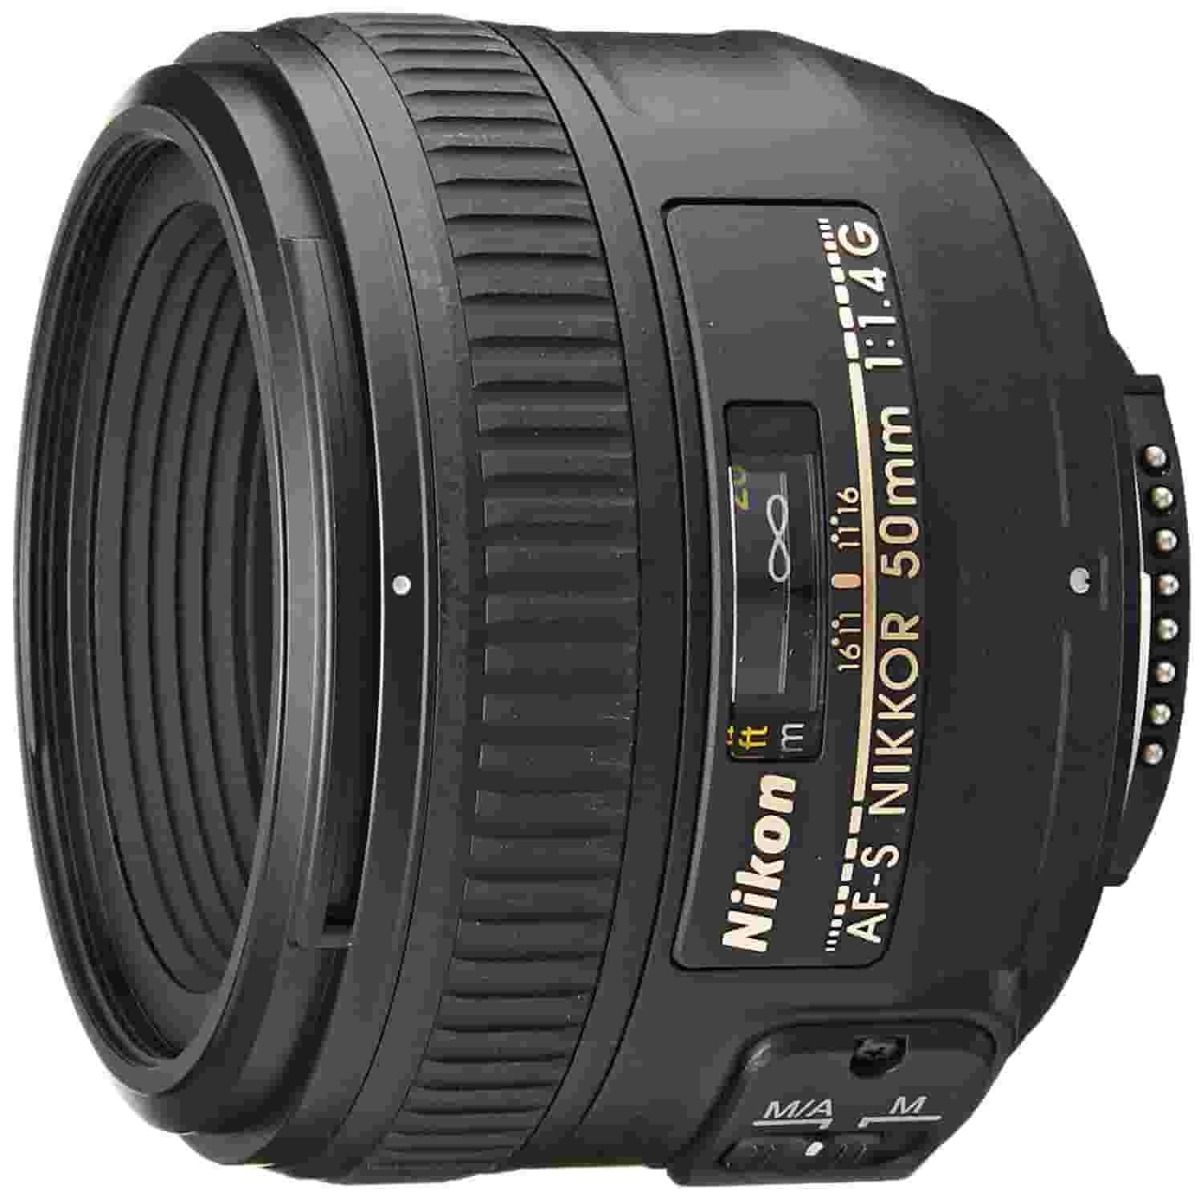 product image of Nikon AF-S NIKKOR 50mm f/1.4G Lens